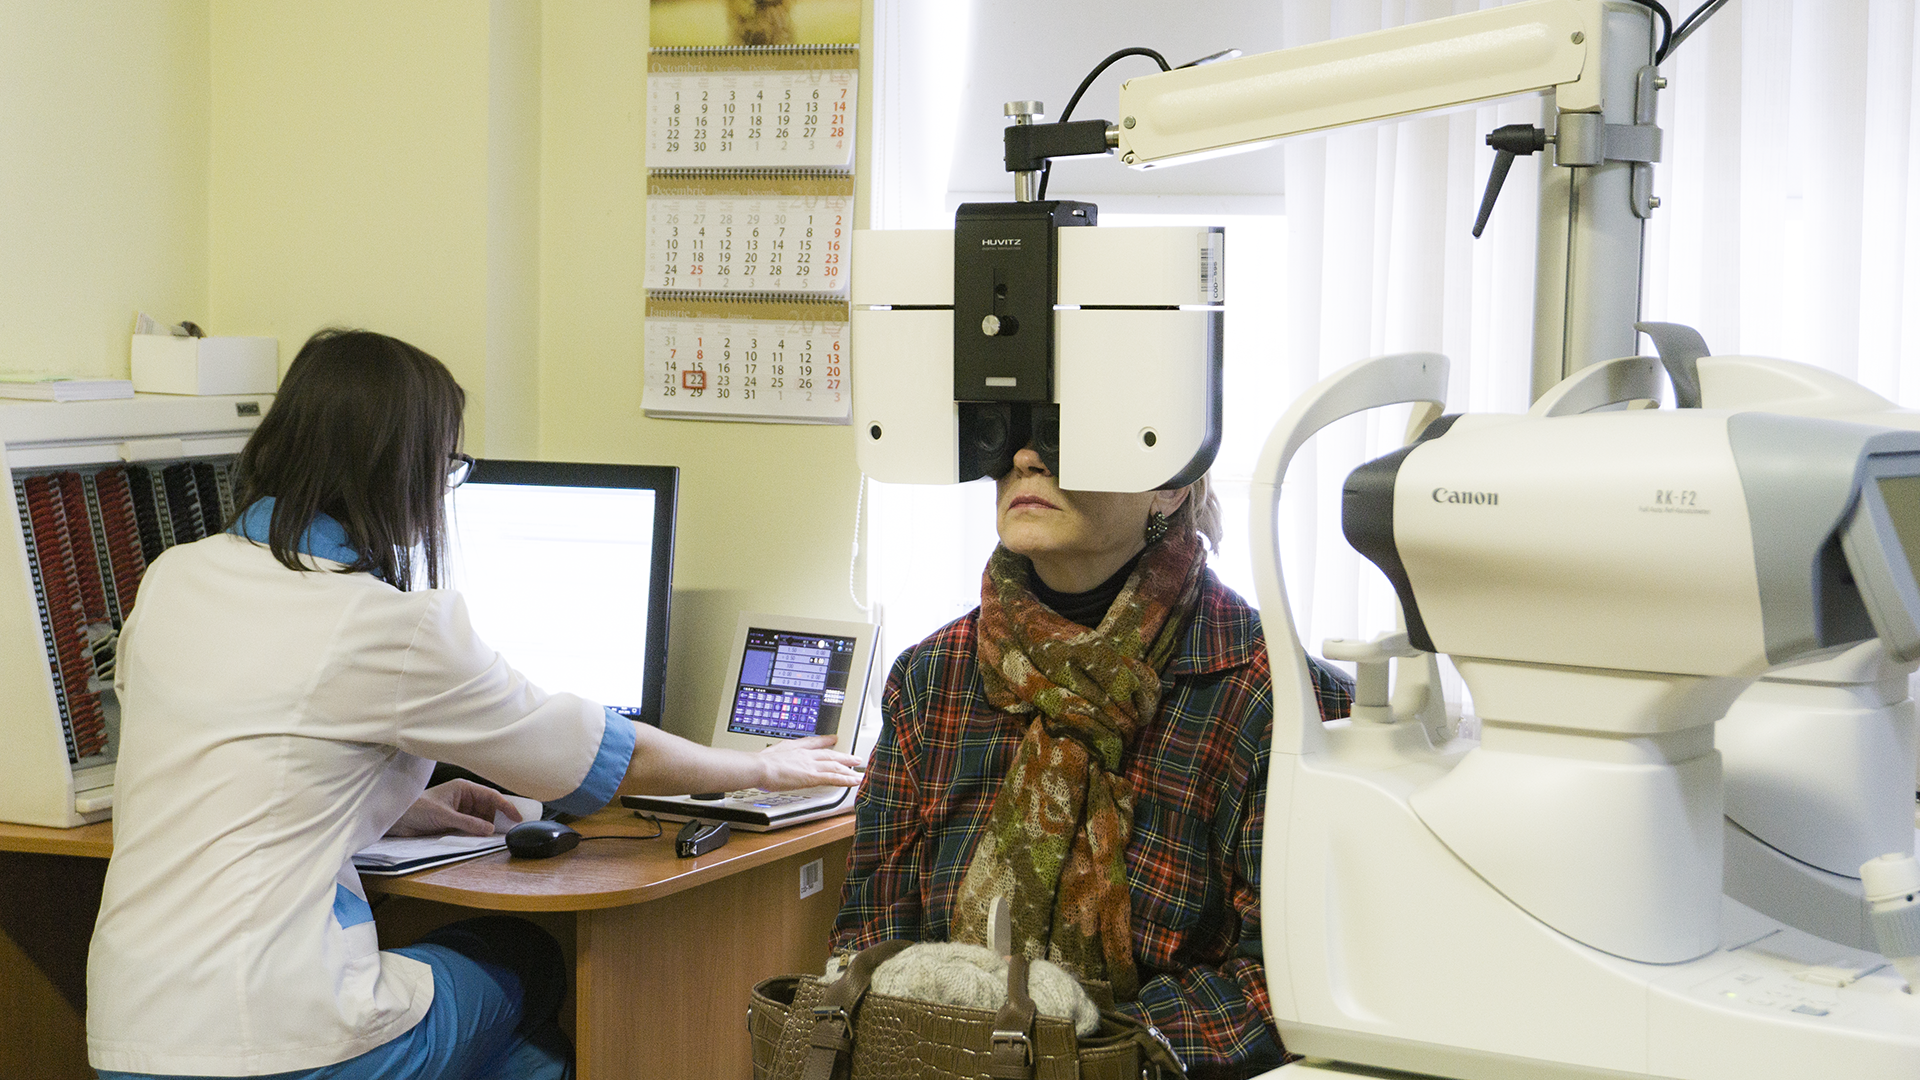 centru oftalmologic zelinski